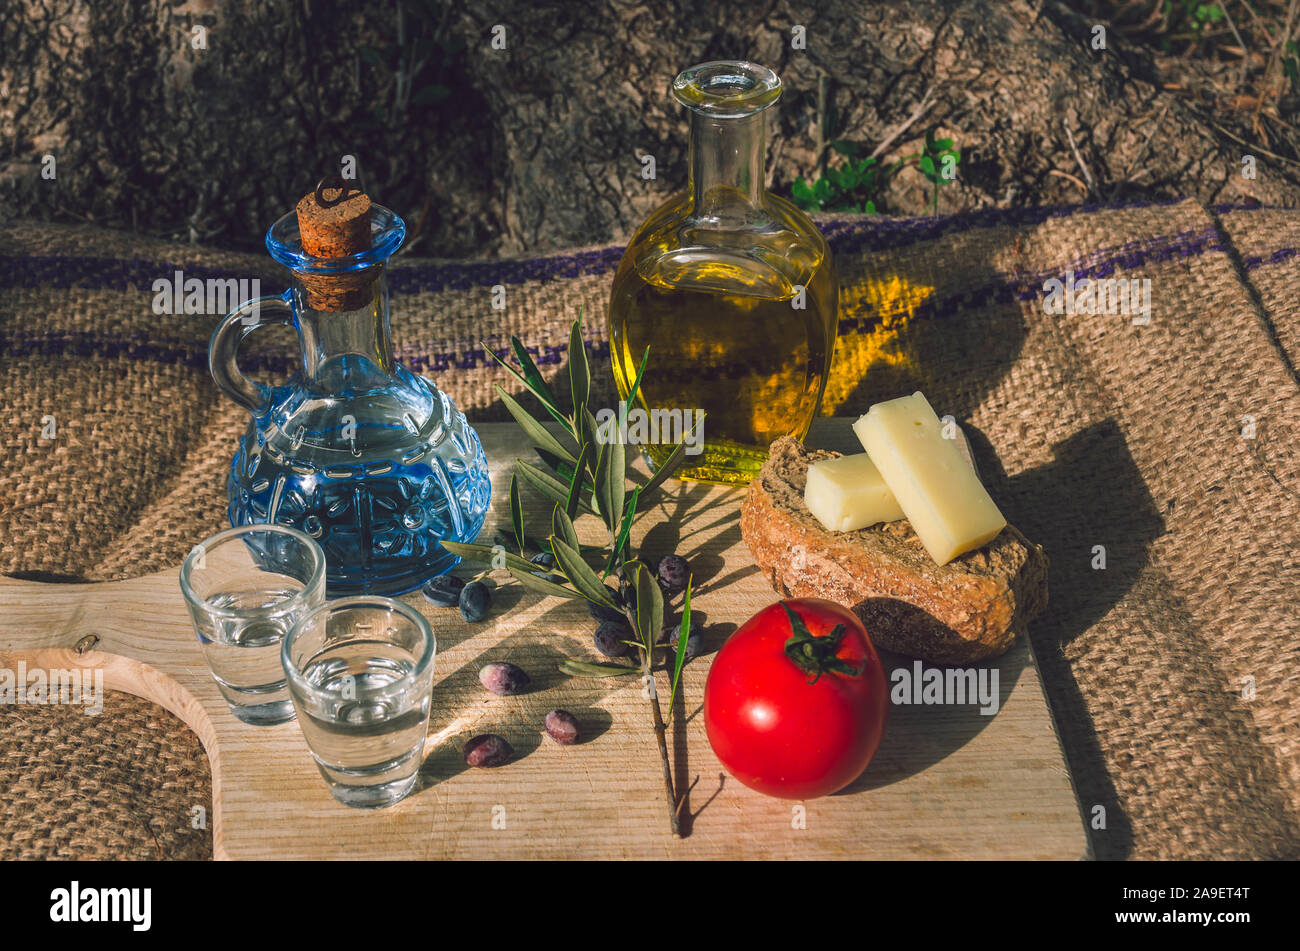 Cuisine crétoise avec l'huile d'olive vierge, olives noires, de l'orge de Crète biscottes, fromage local et carafe de raki crétois. Banque D'Images